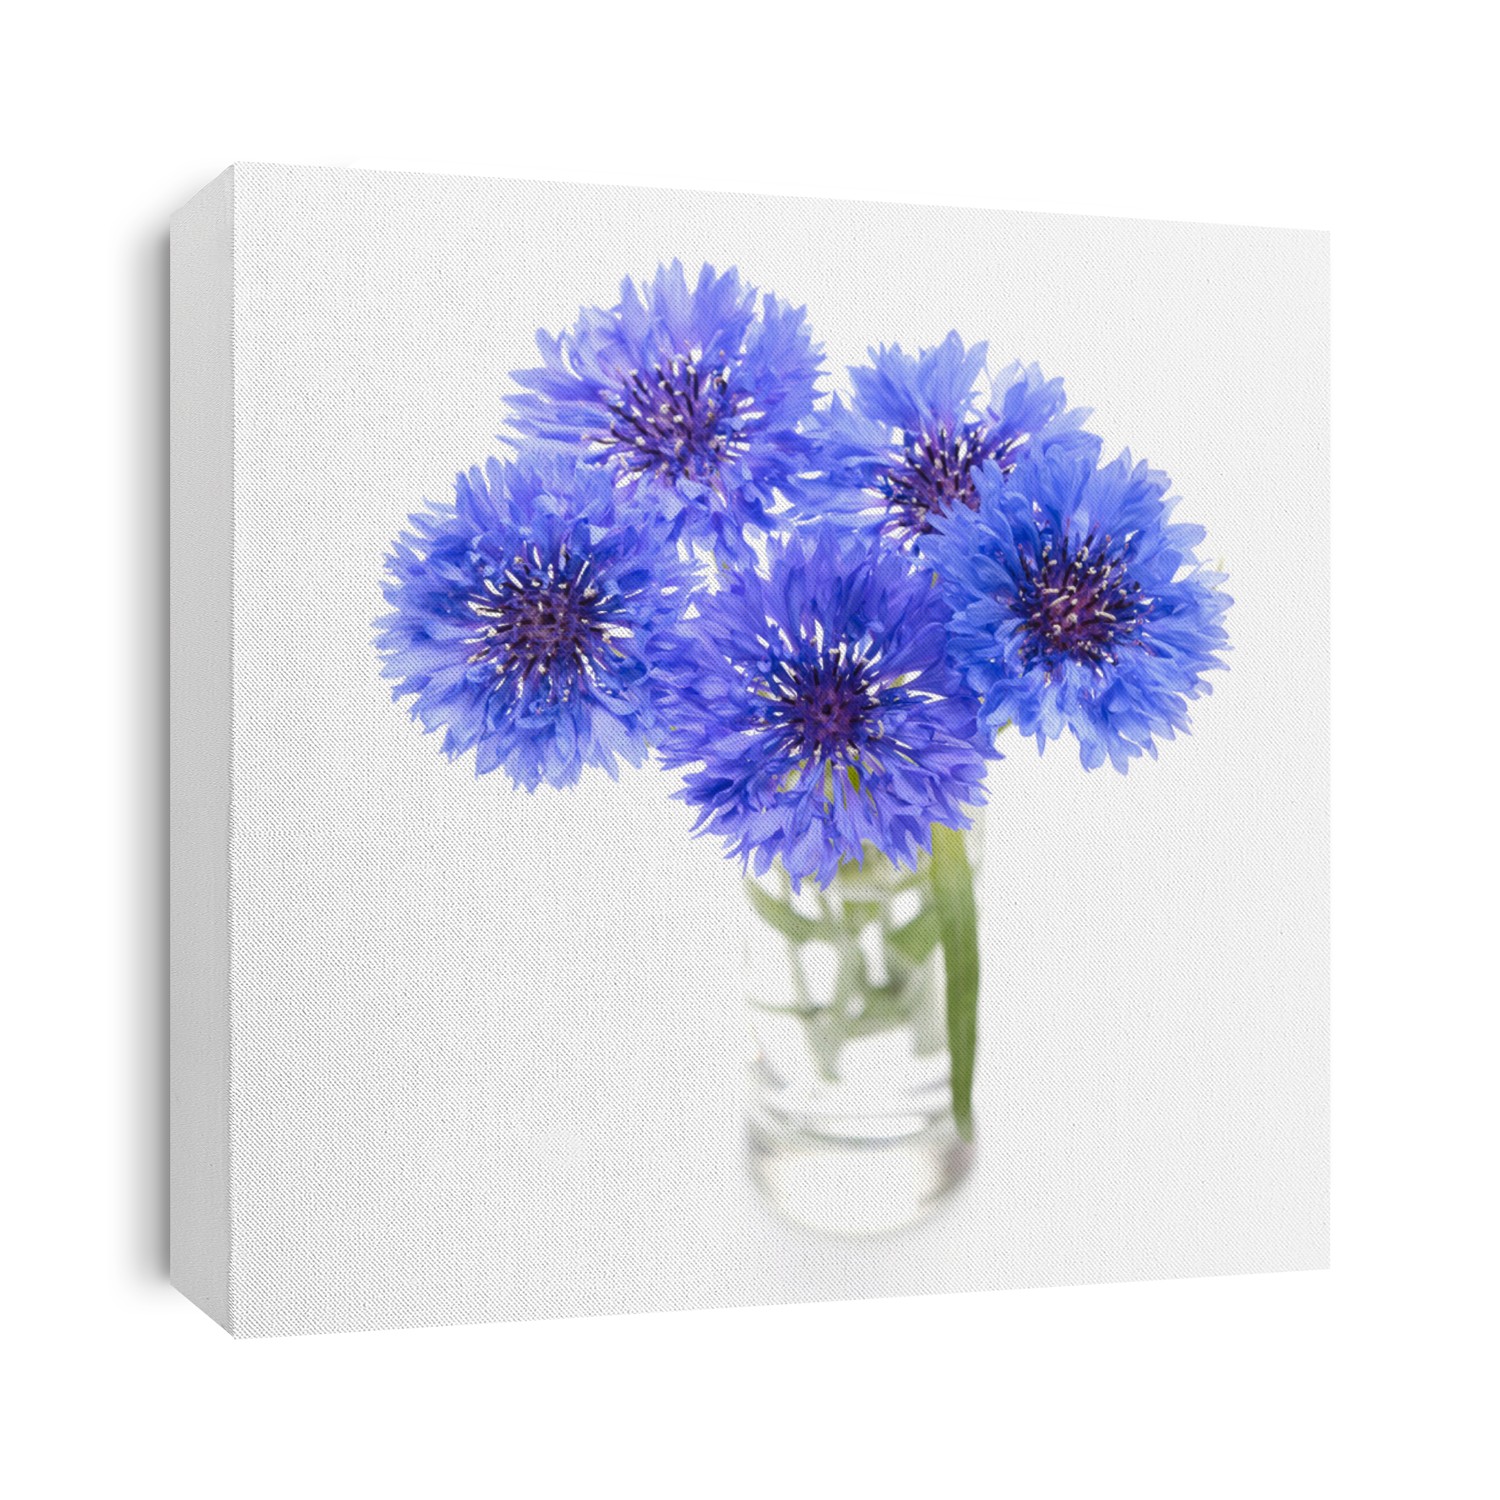 Blue cornflower. Flower bouquet isolated on white.